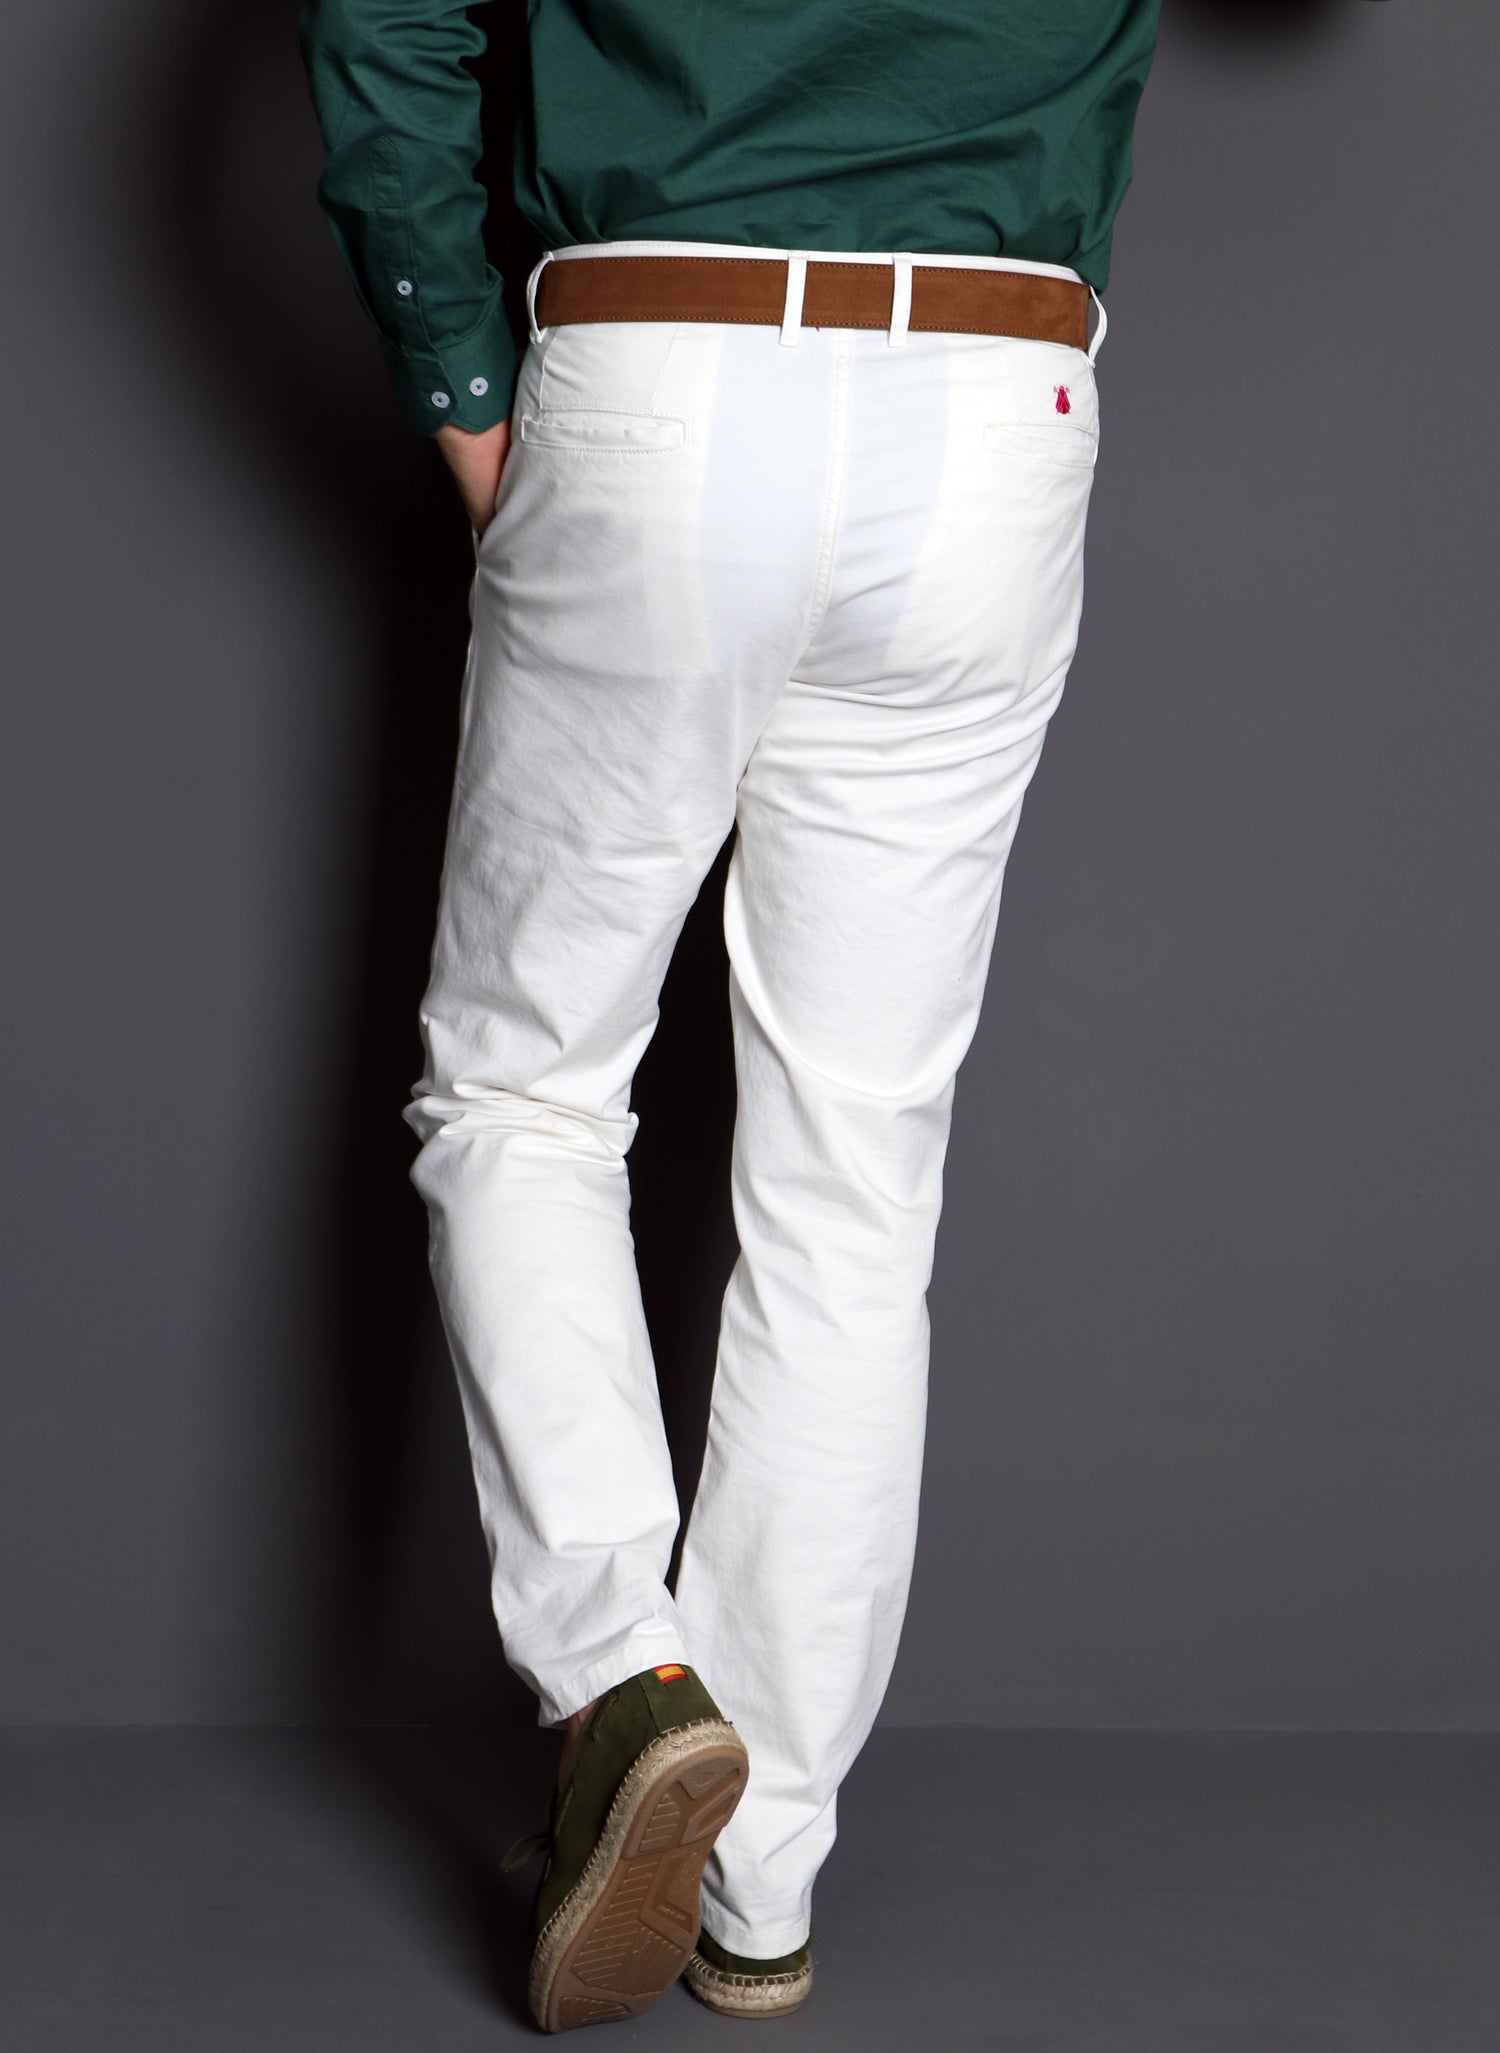 Pantalón blanco hombre cinco bolsillos – El Capote